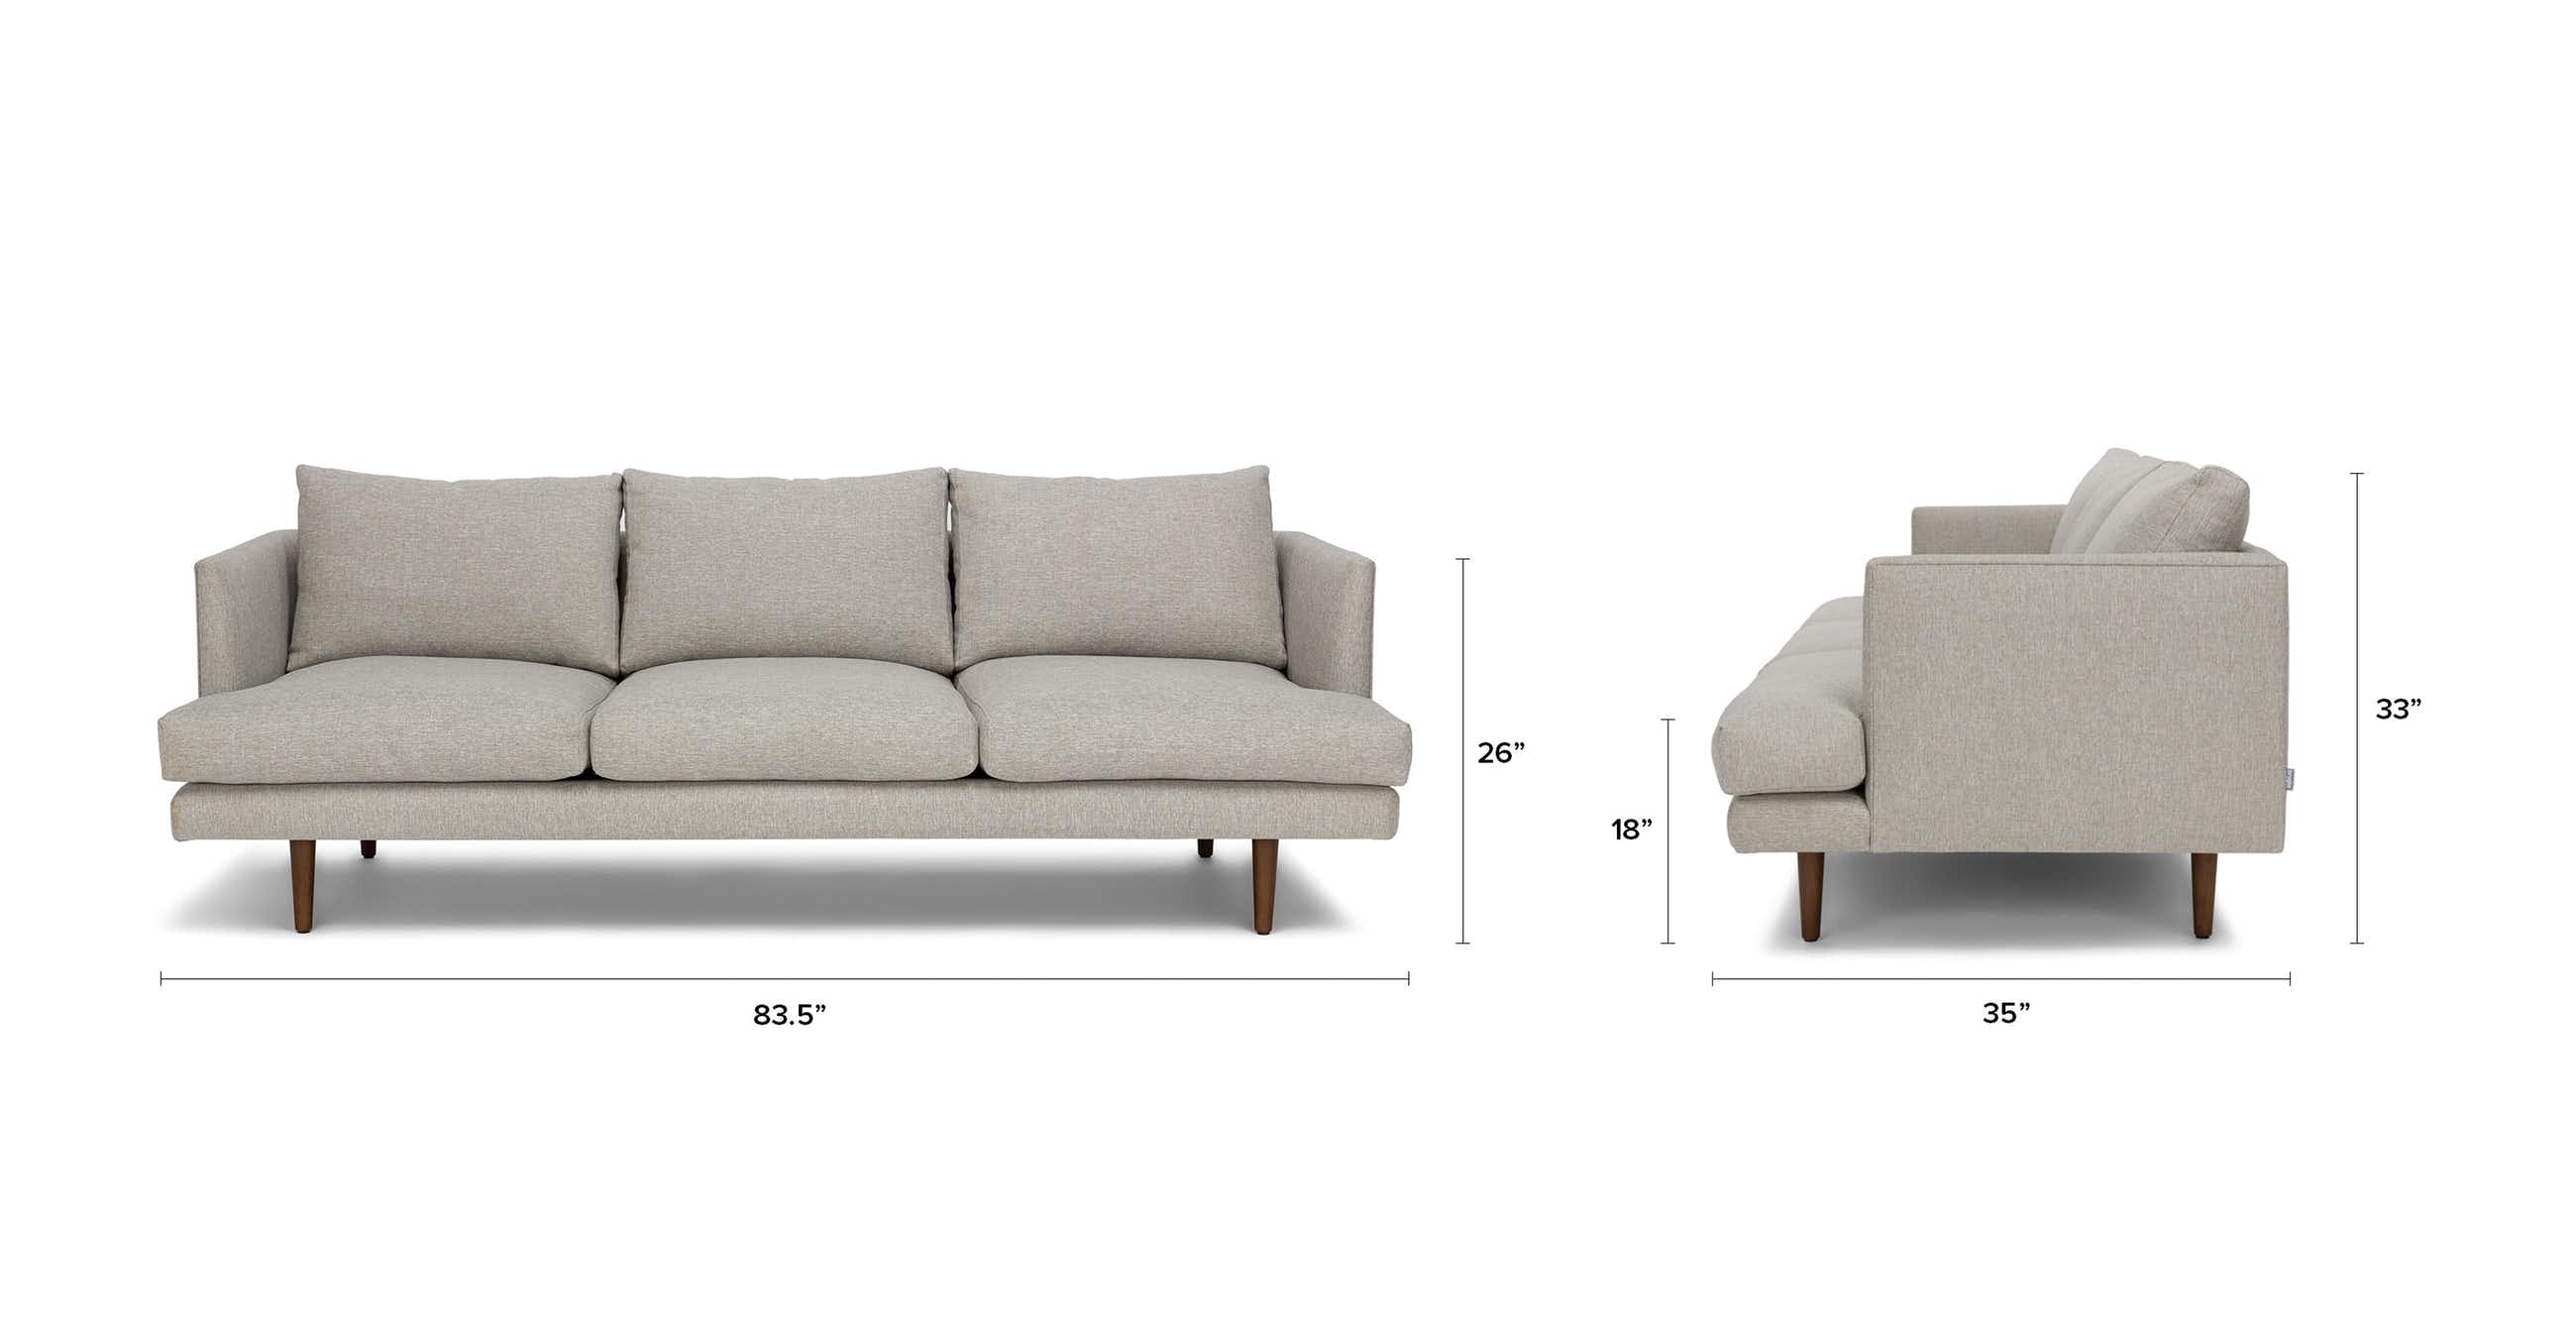 Burrard Seasalt Gray Sofa - Image 7